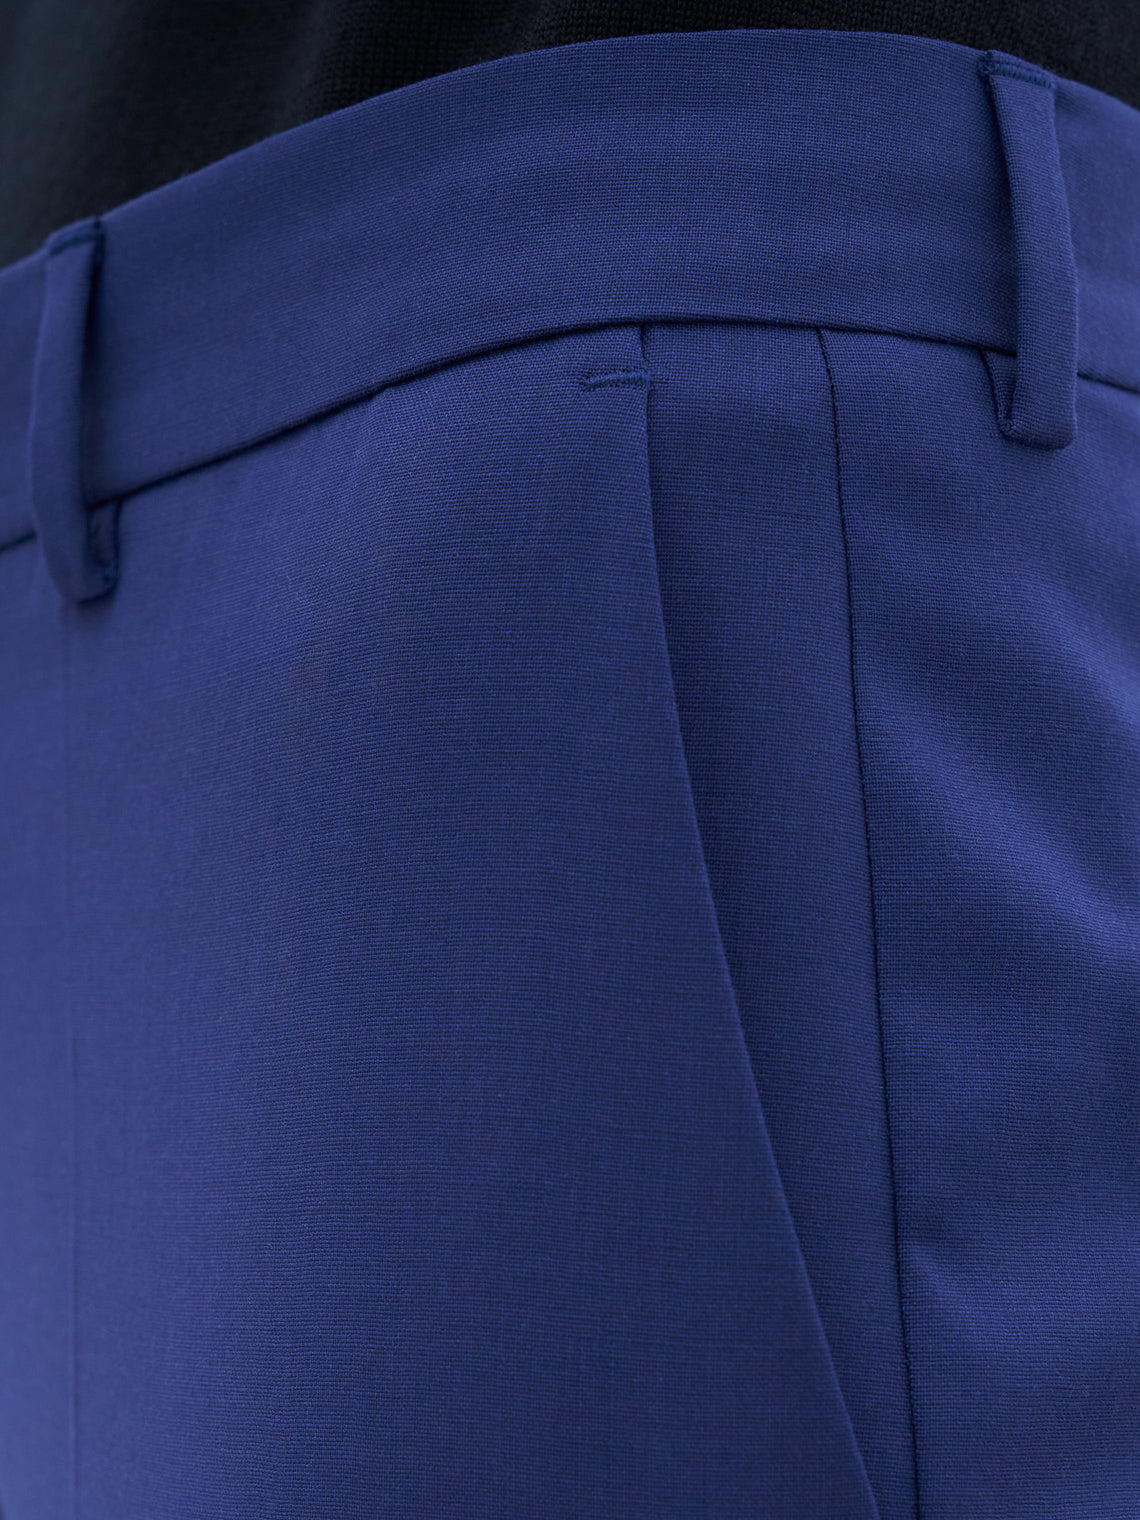 Emma cropped wool trouser by Filippa K - ocean blue